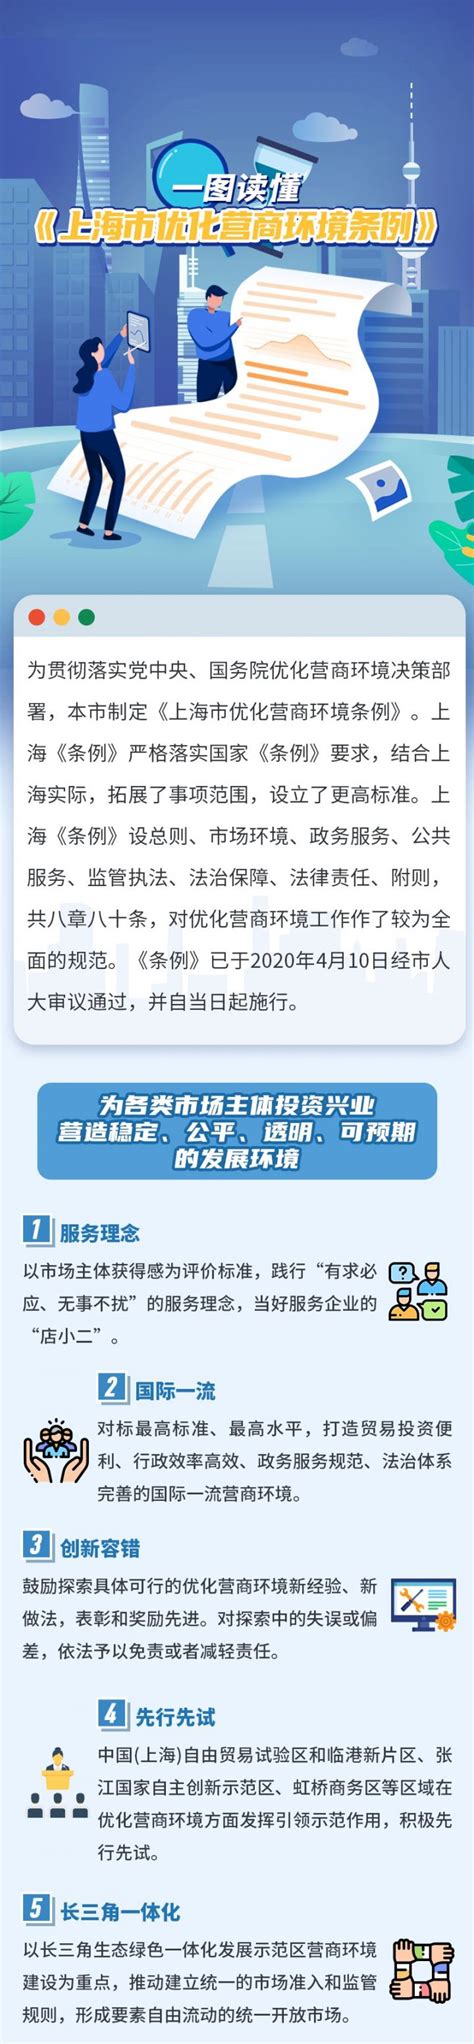 一图读懂丨上海市优化营商环境深化供排水接入改革举措（中英双语）-上海星火中法供水有限公司